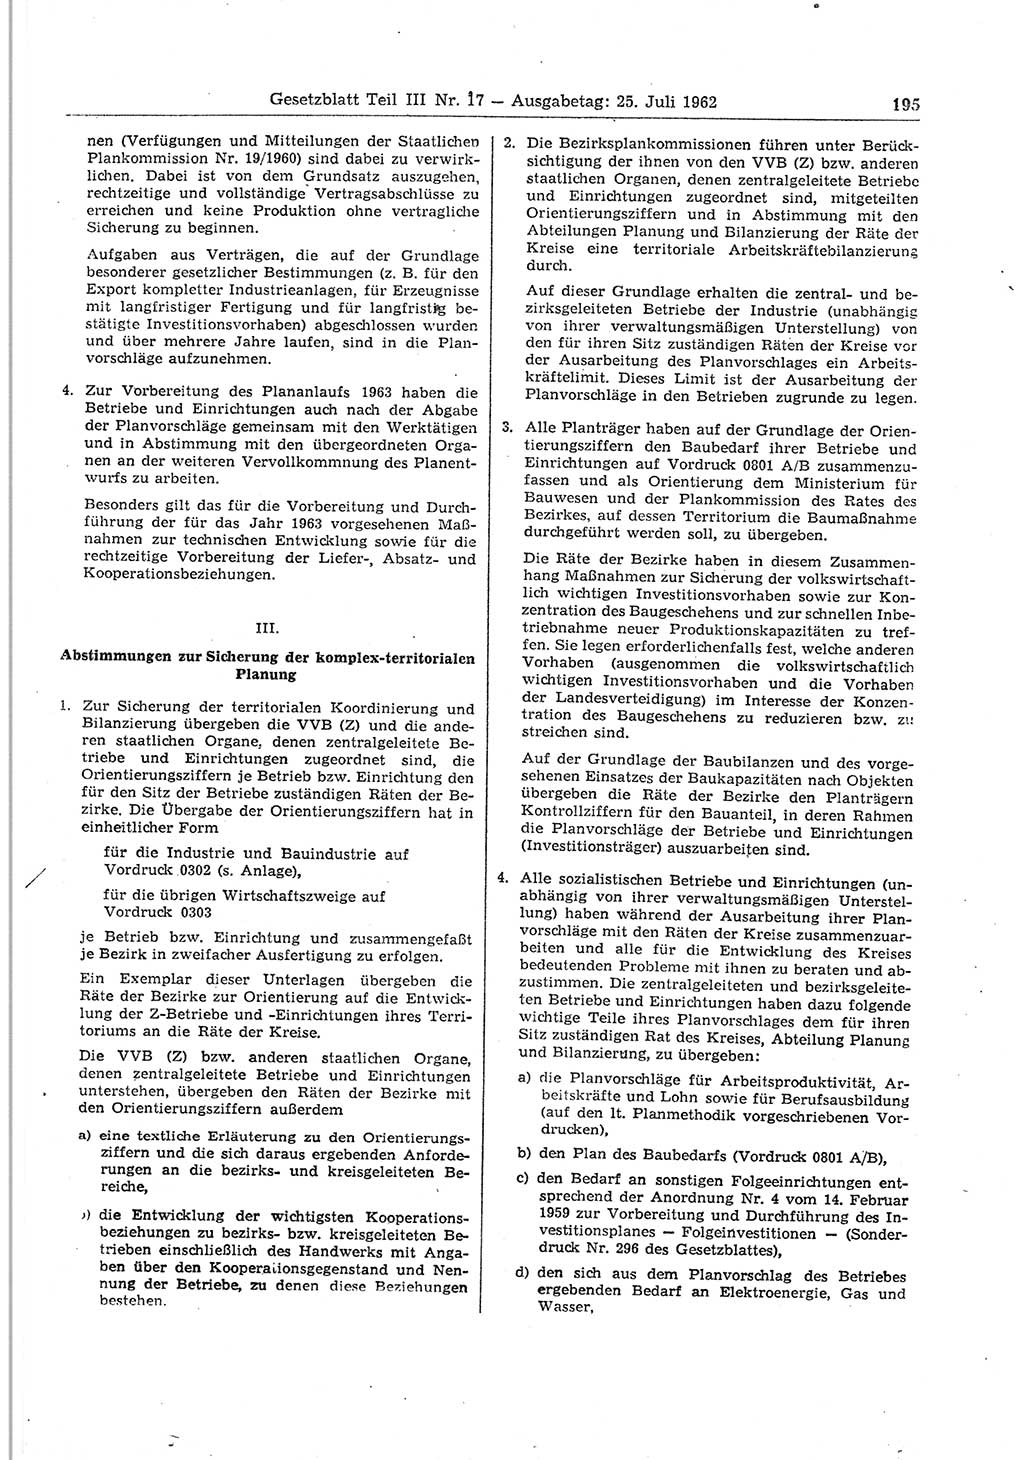 Gesetzblatt (GBl.) der Deutschen Demokratischen Republik (DDR) Teil ⅠⅠⅠ 1962, Seite 195 (GBl. DDR ⅠⅠⅠ 1962, S. 195)